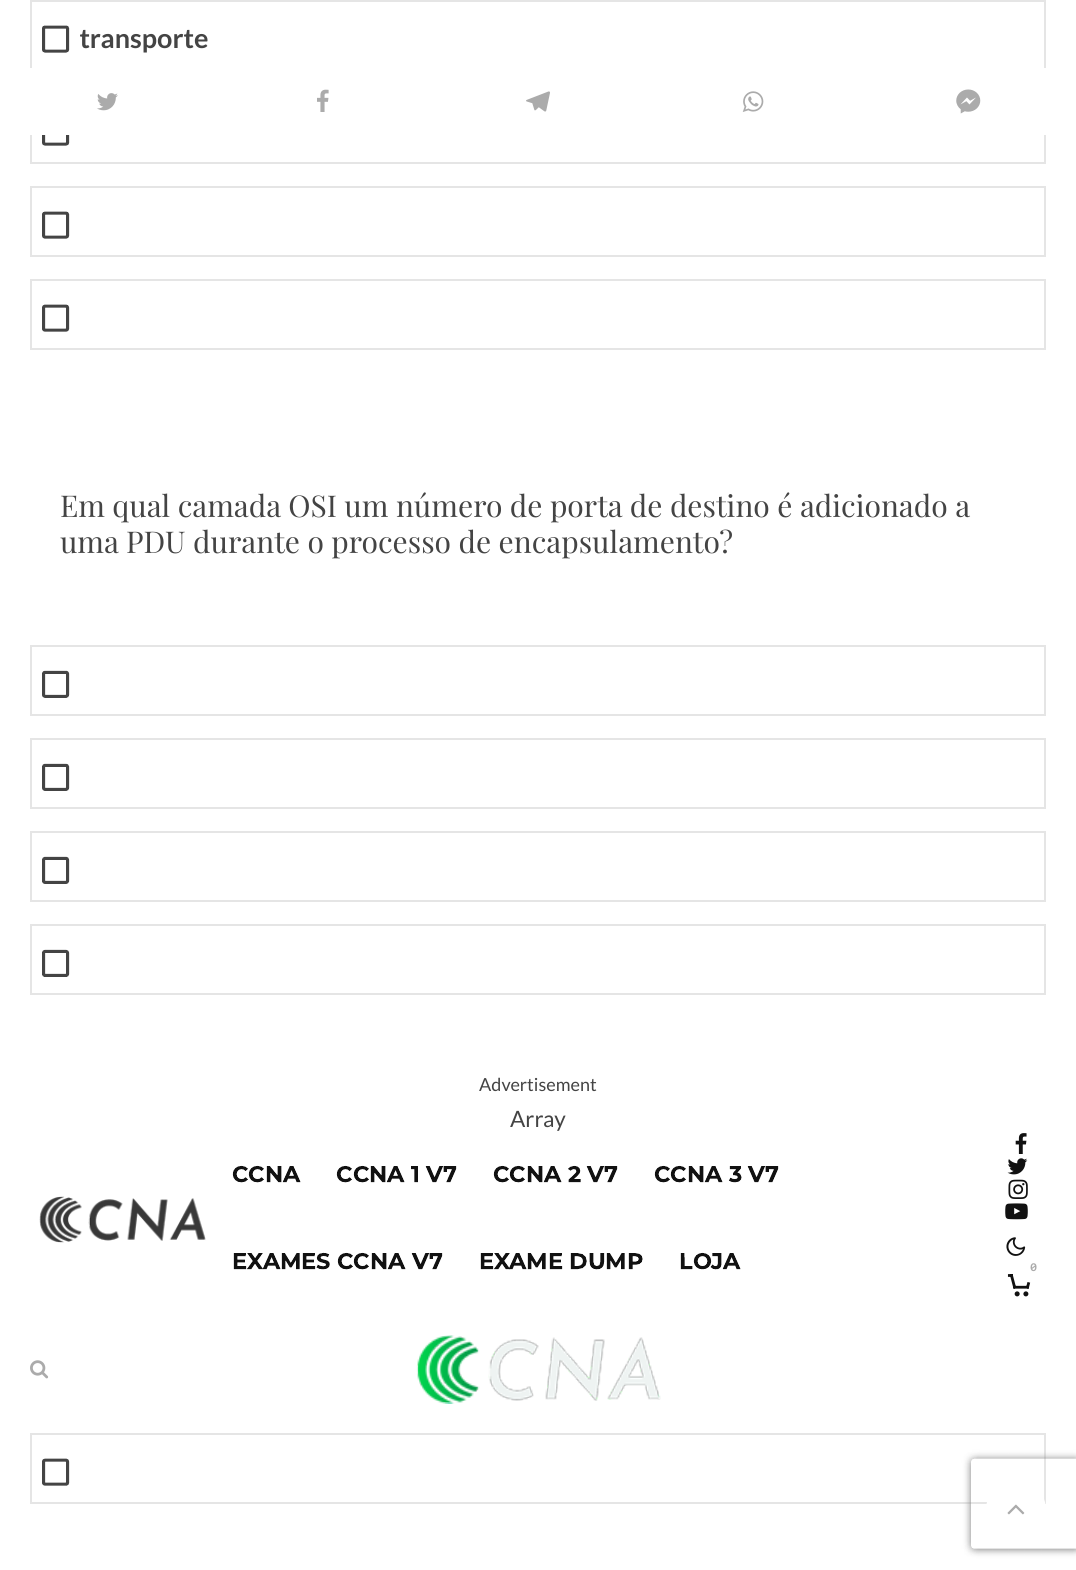 ▷ CCNA1 ITN  Prática Final Respostas de Exame » CCNA 200-301 v7